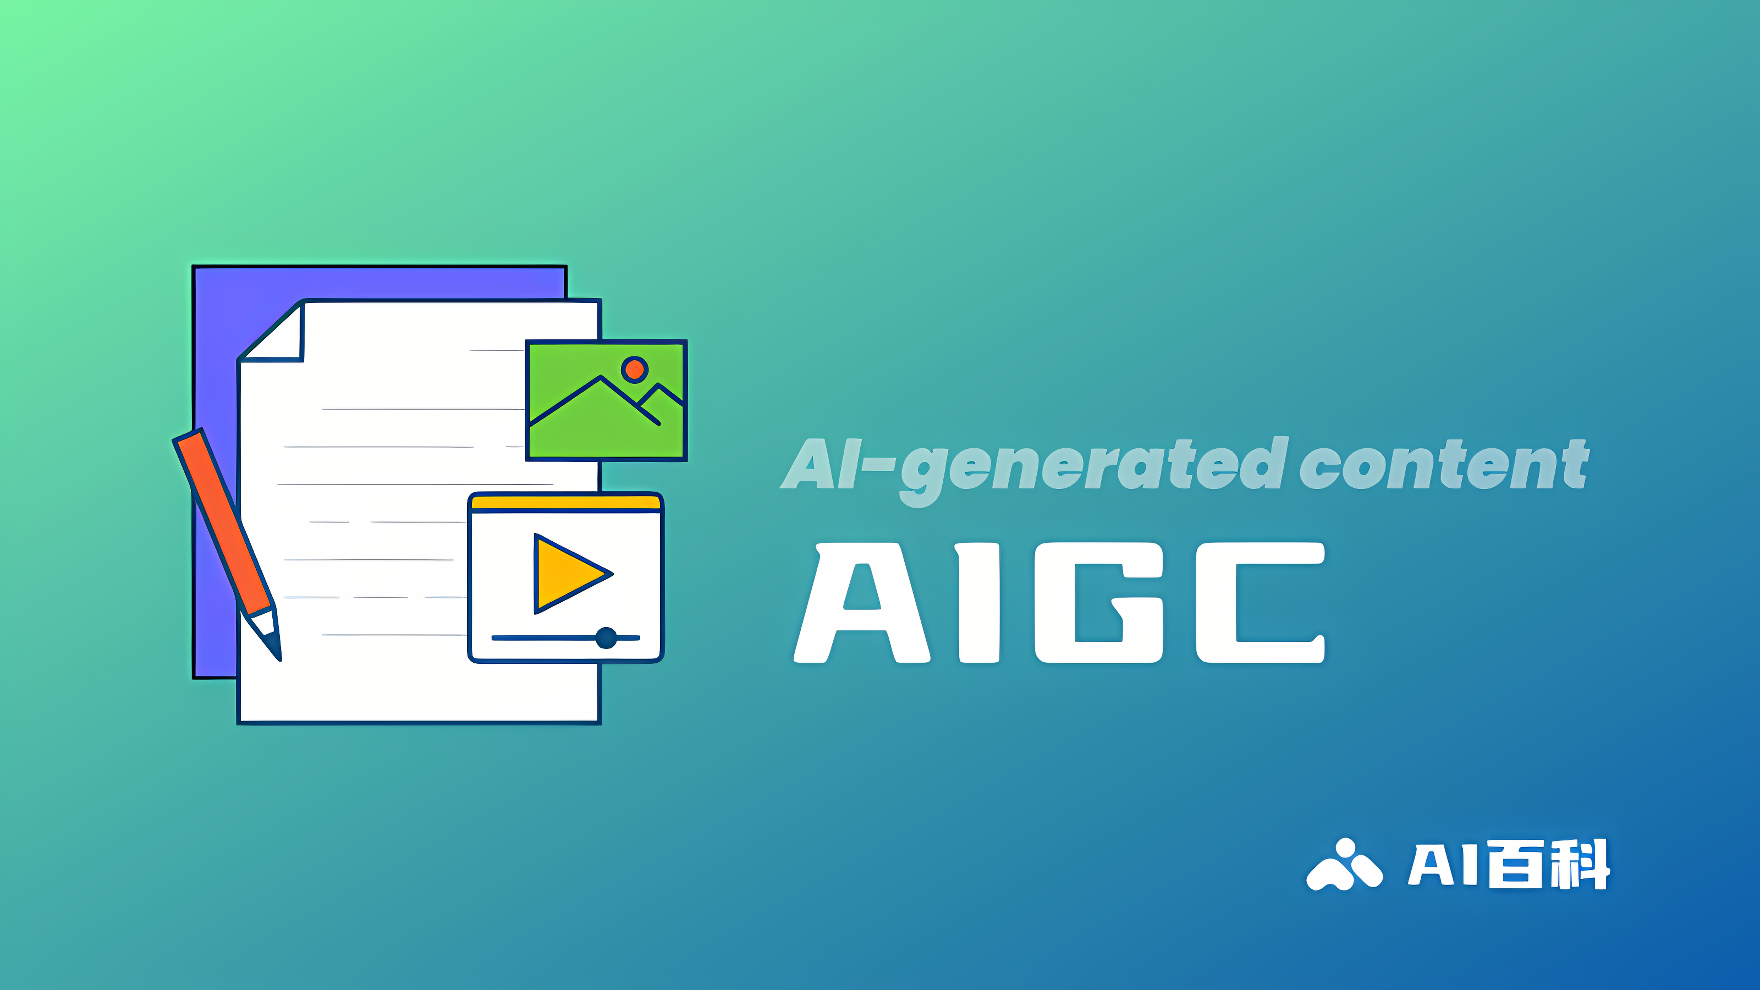 这是一张插图，显示了几张堆叠的文件、一支铅笔和标有“AI-generated content AIGC”字样的图标，代表人工智能生成的内容。